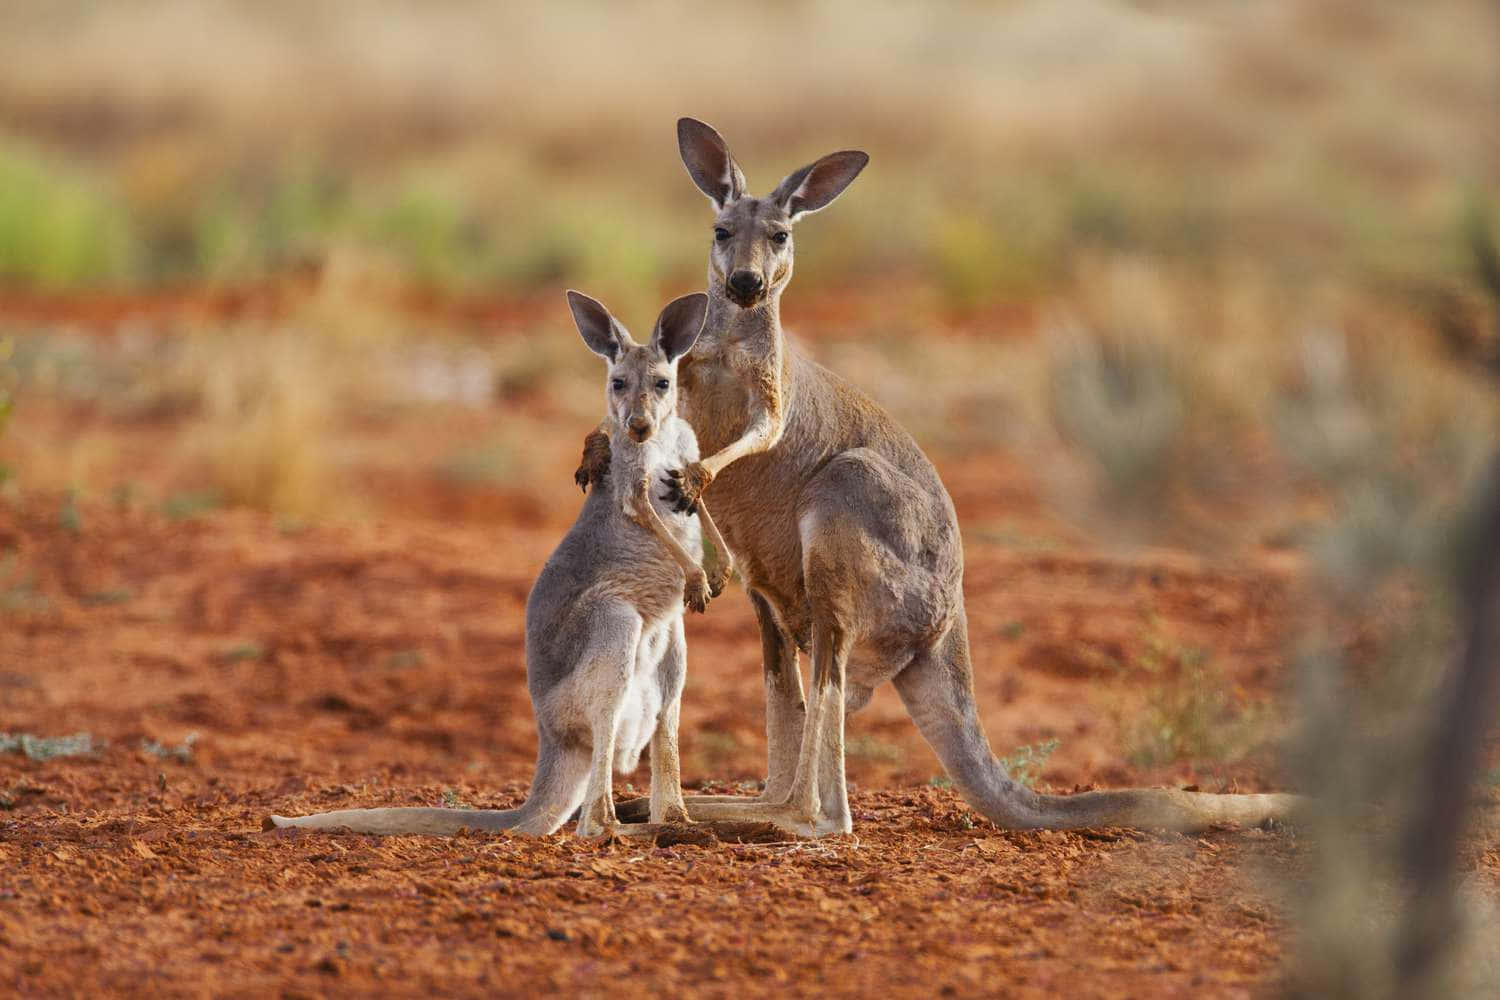 A native Australian kangaroo in its natural environment.